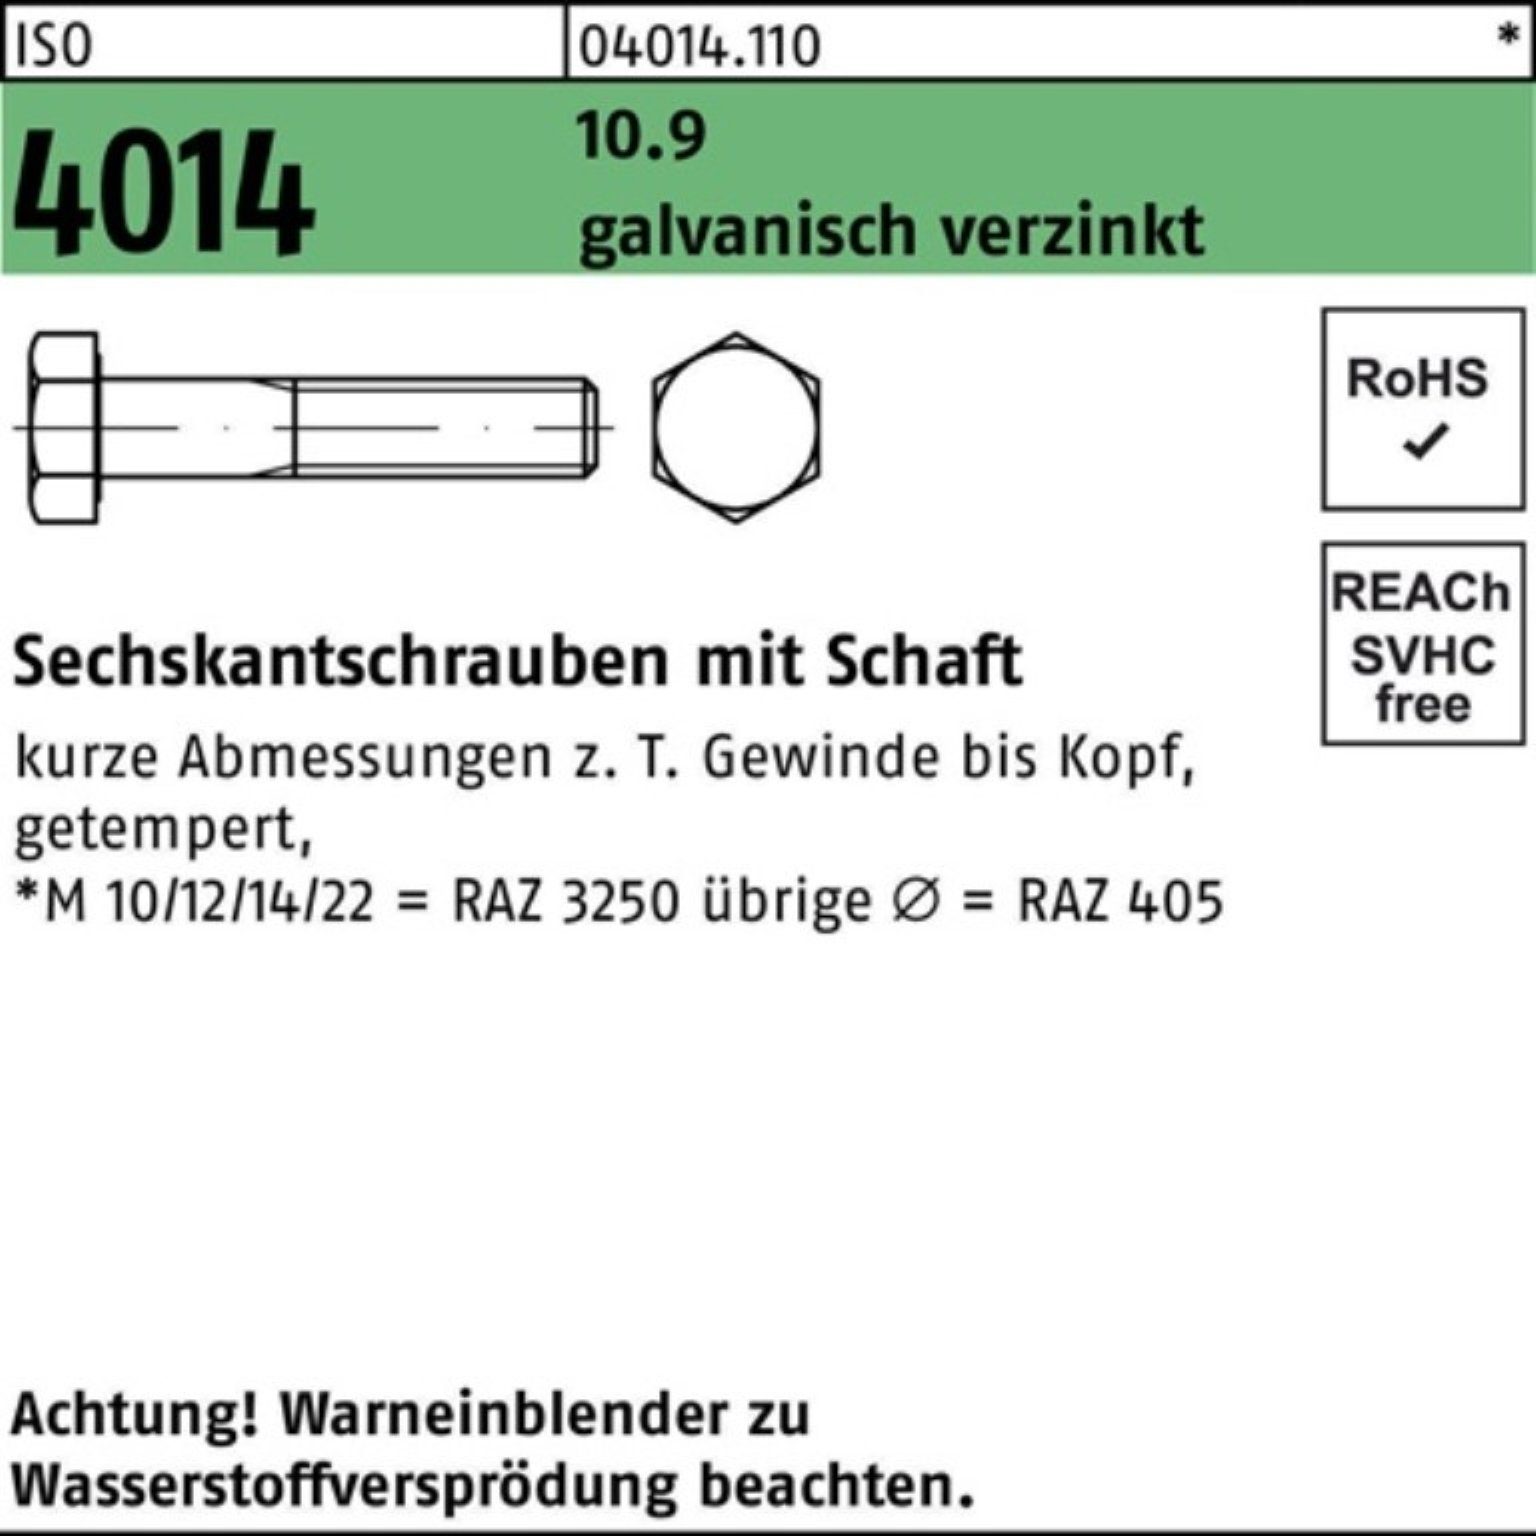 Schaft Bufab M24x 10.9 ISO galv.verz. 120 Sechskantschraube Pack 4014 Sechskantschraube 100er